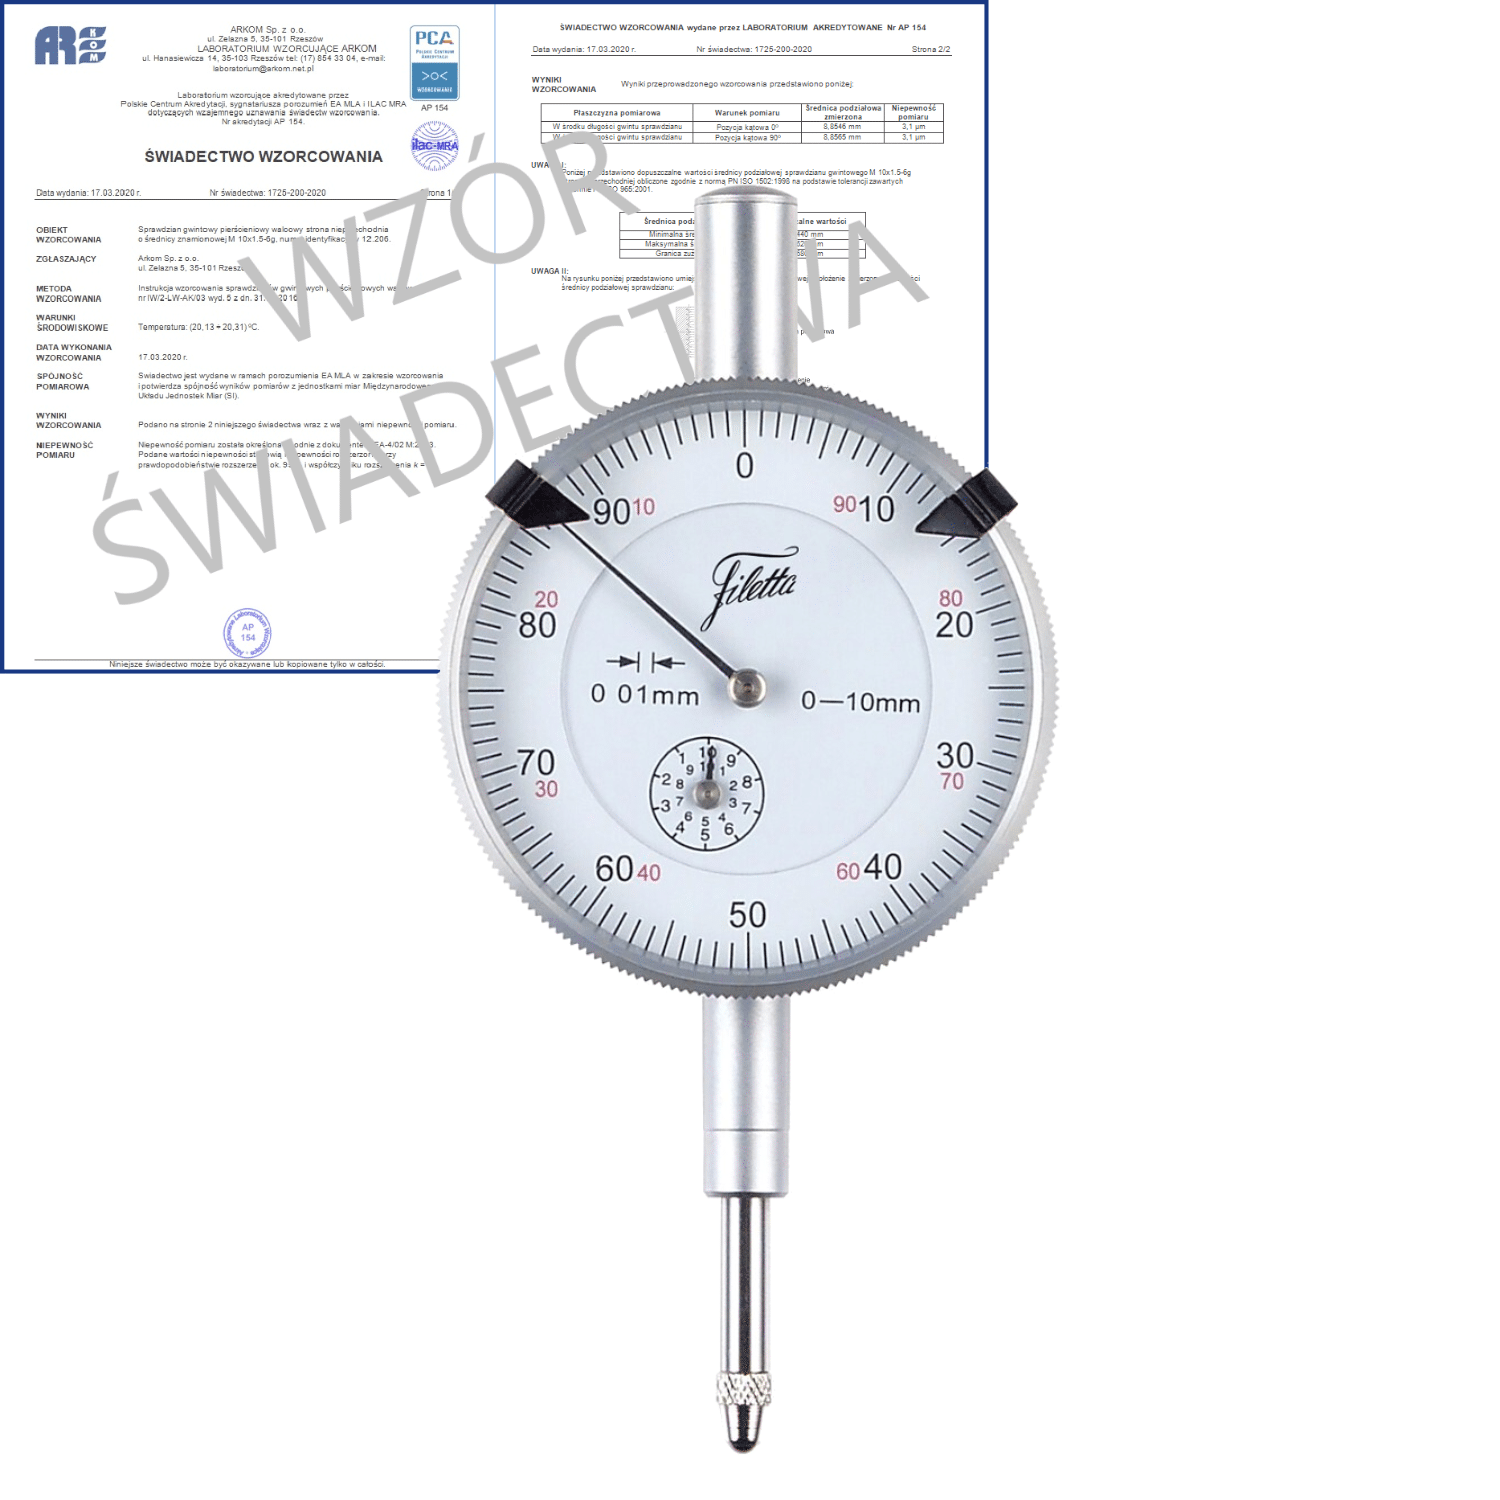 SCHUT czujnik zegarowy 0-3/0.01mm + świadectwo wzorcowania PCA 907.928 WZORC